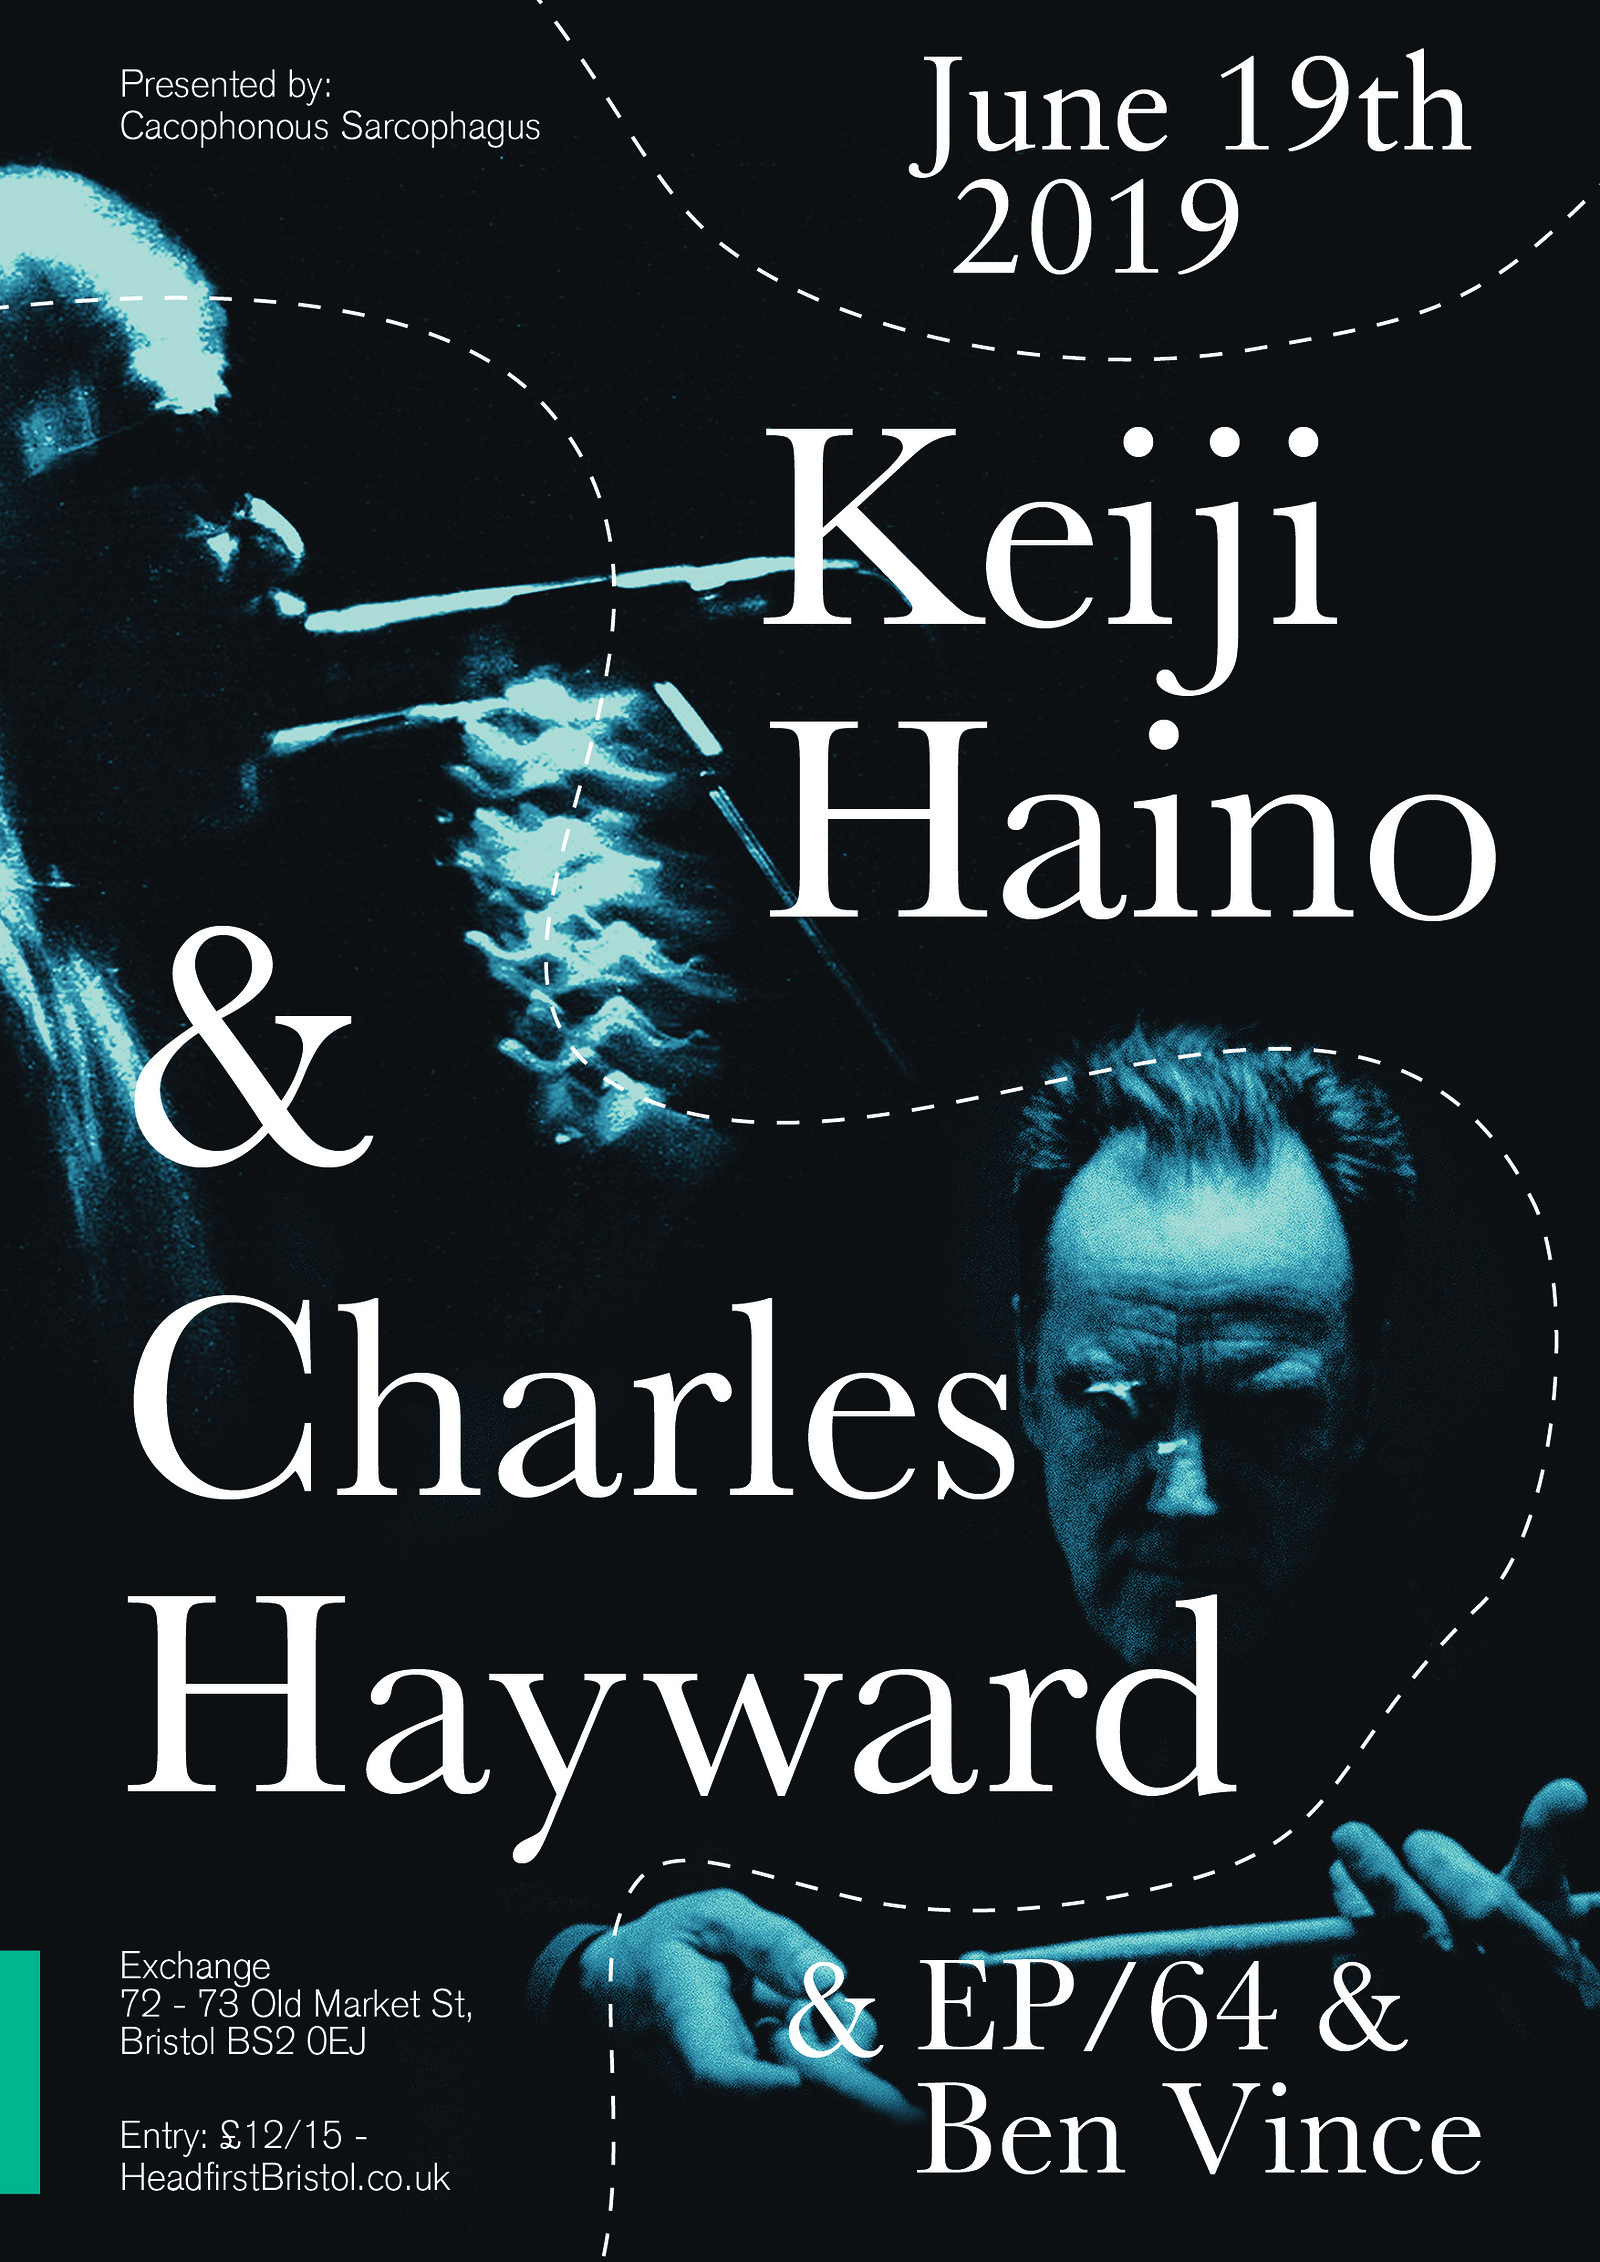 Keiji Haino & Charles Hayward + EP/64 & Ben Vince at Exchange